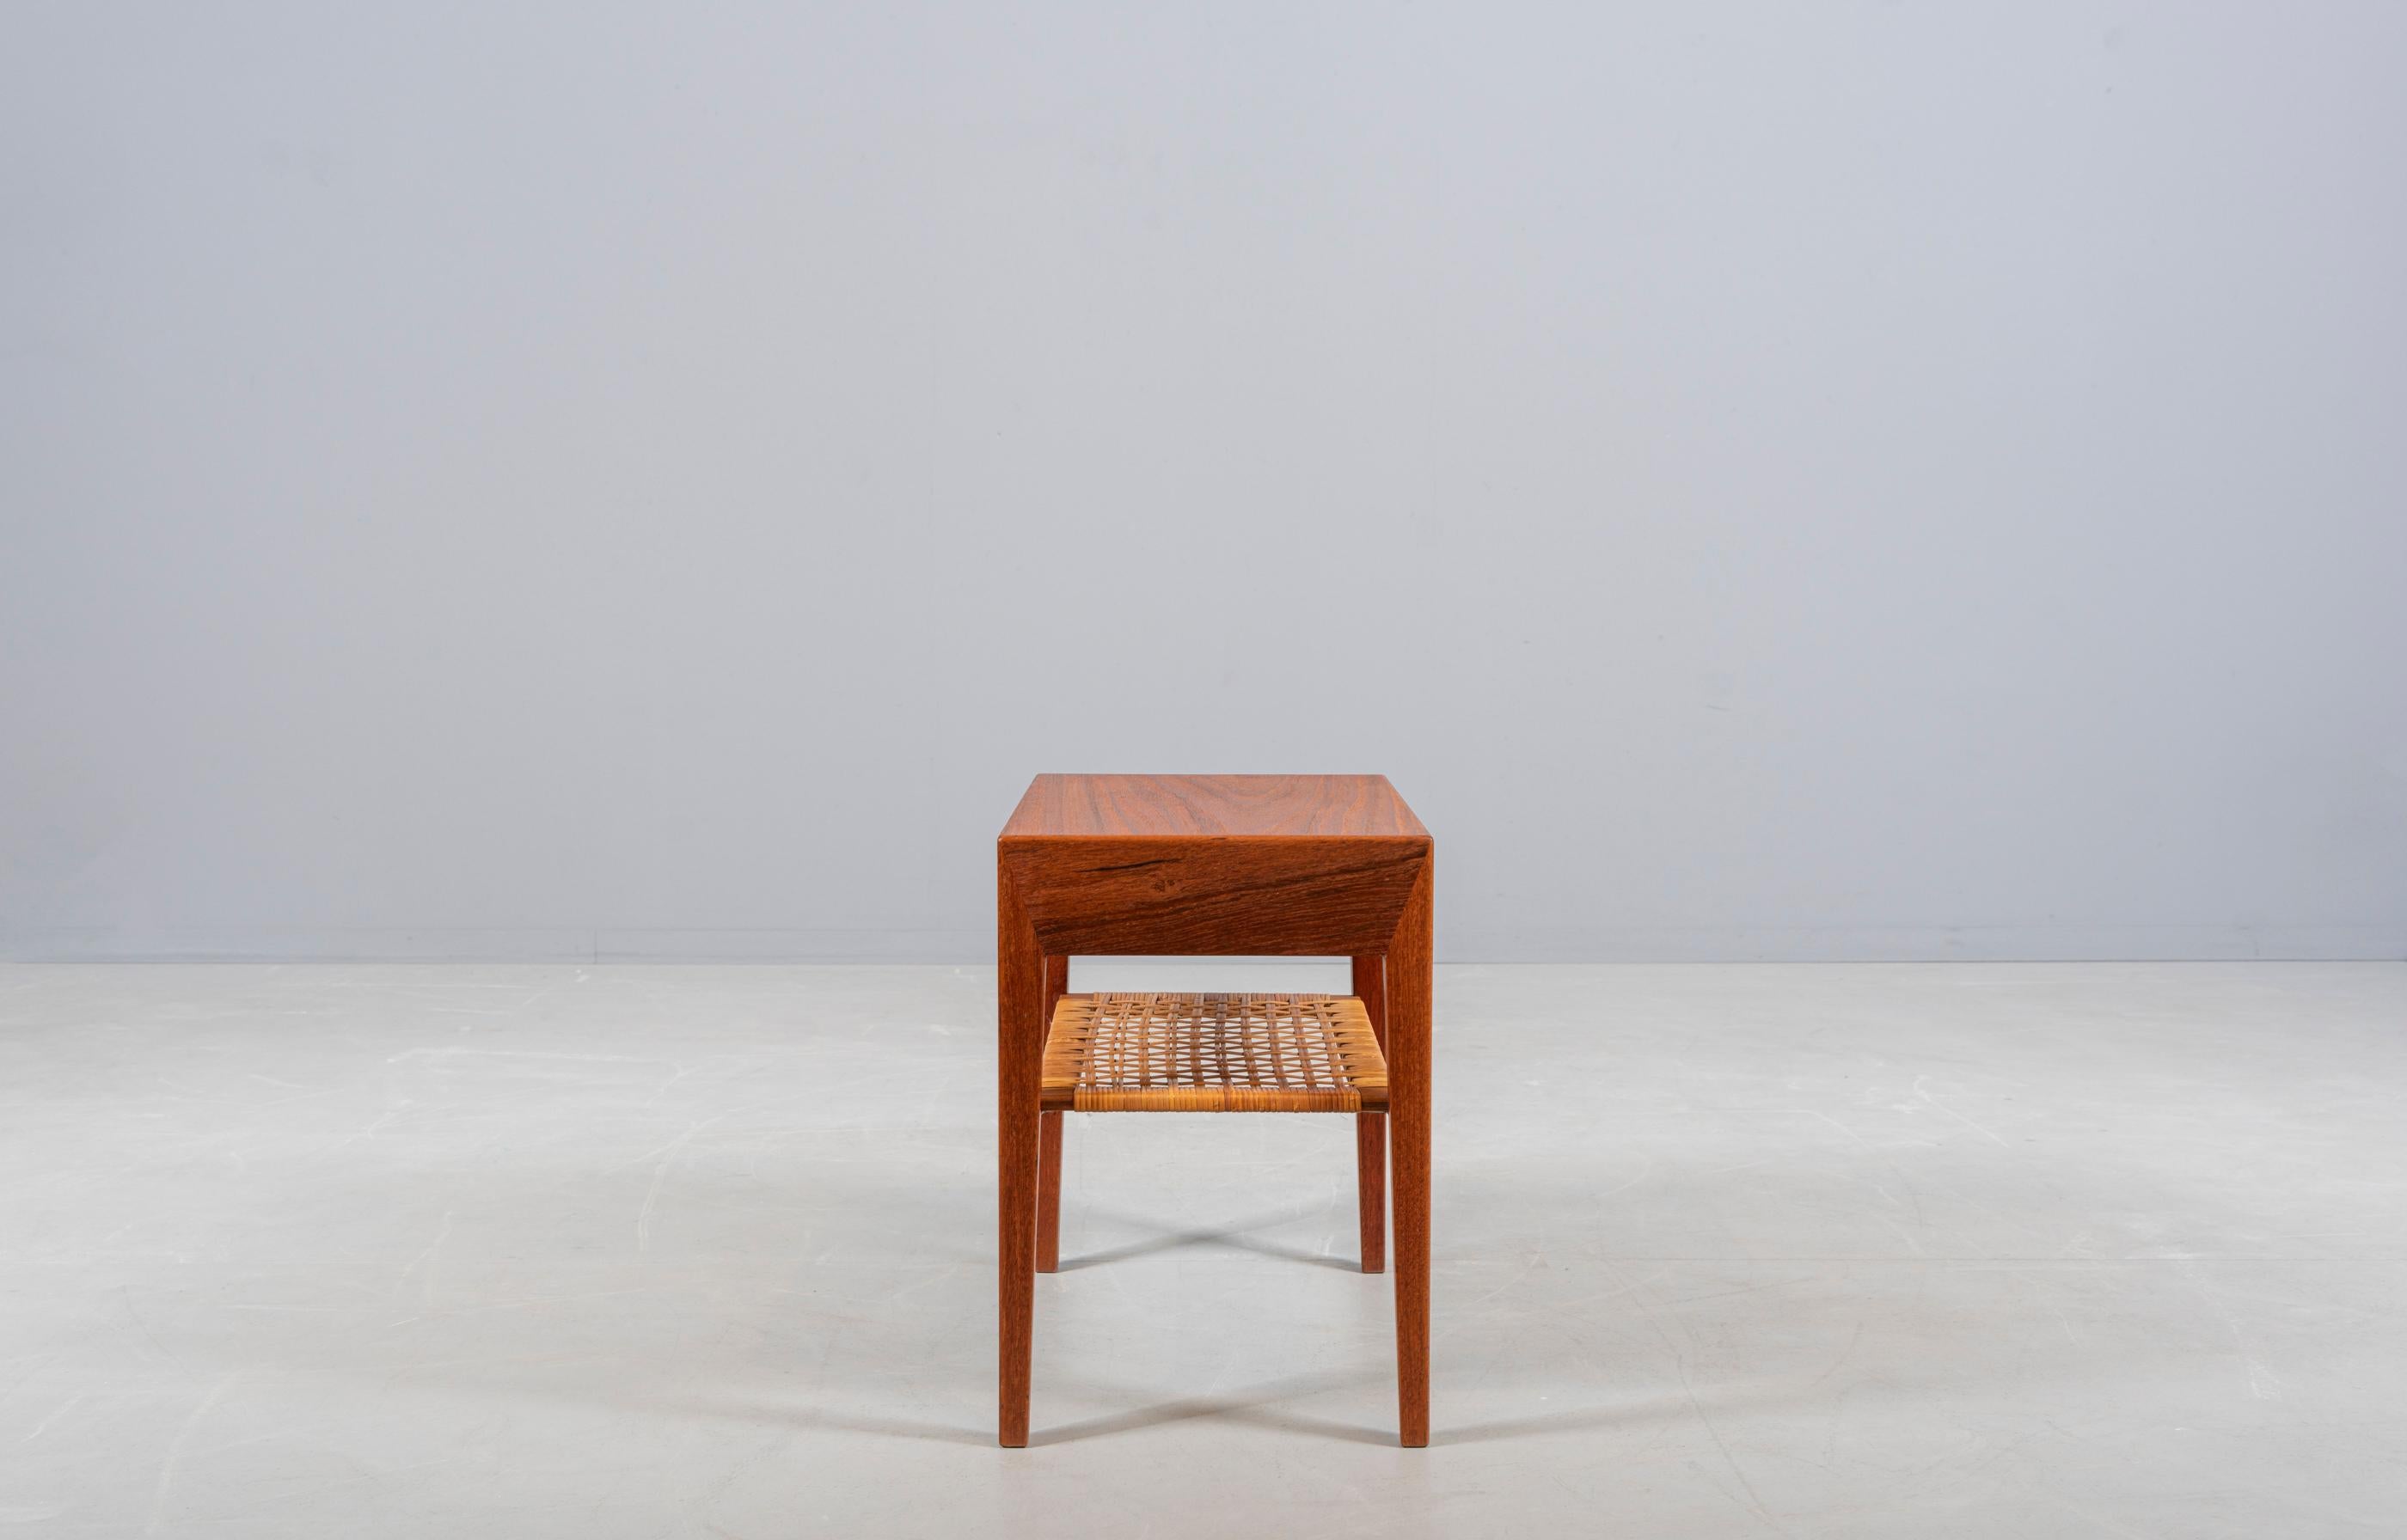 Kleiner Beistelltisch oder Nachttisch aus Teakholz. Design von Severin Hansen Jr., hergestellt von Haslev Furniture in Dänemark in den 1950er Jahren. Eine Schublade, Regal aus Schilfrohr. Schöne Details.

